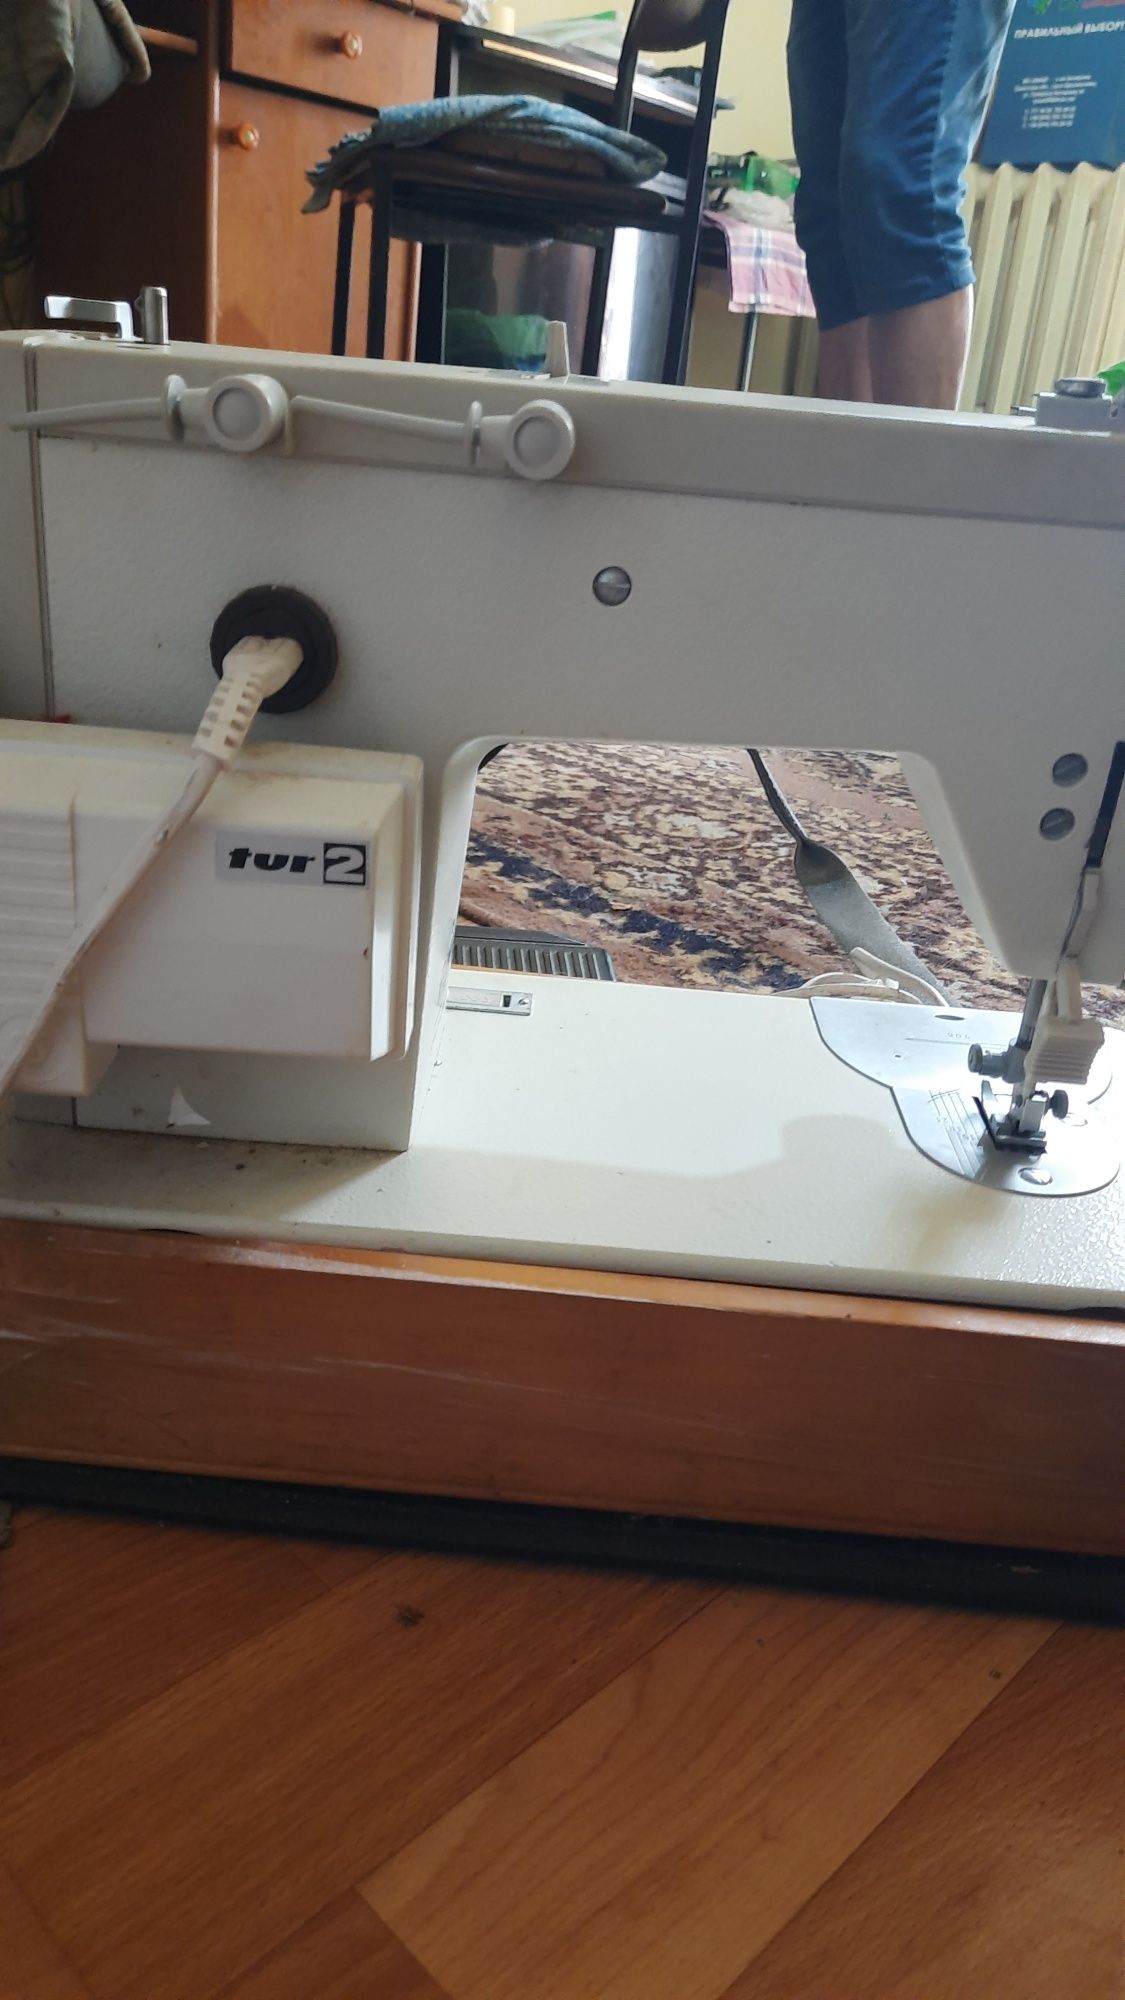 Швейная машинка Veritas с электроприводом в футляре